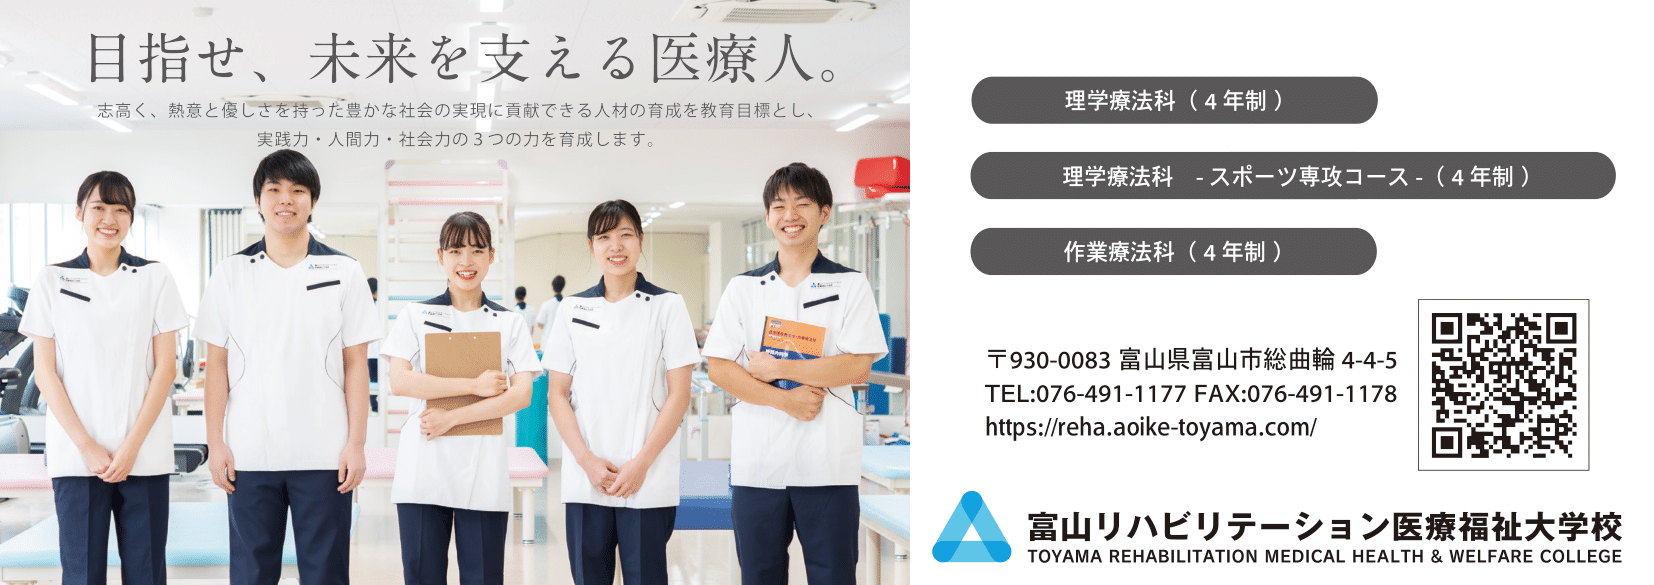 富山リハビリテーション医療福祉大学校広告